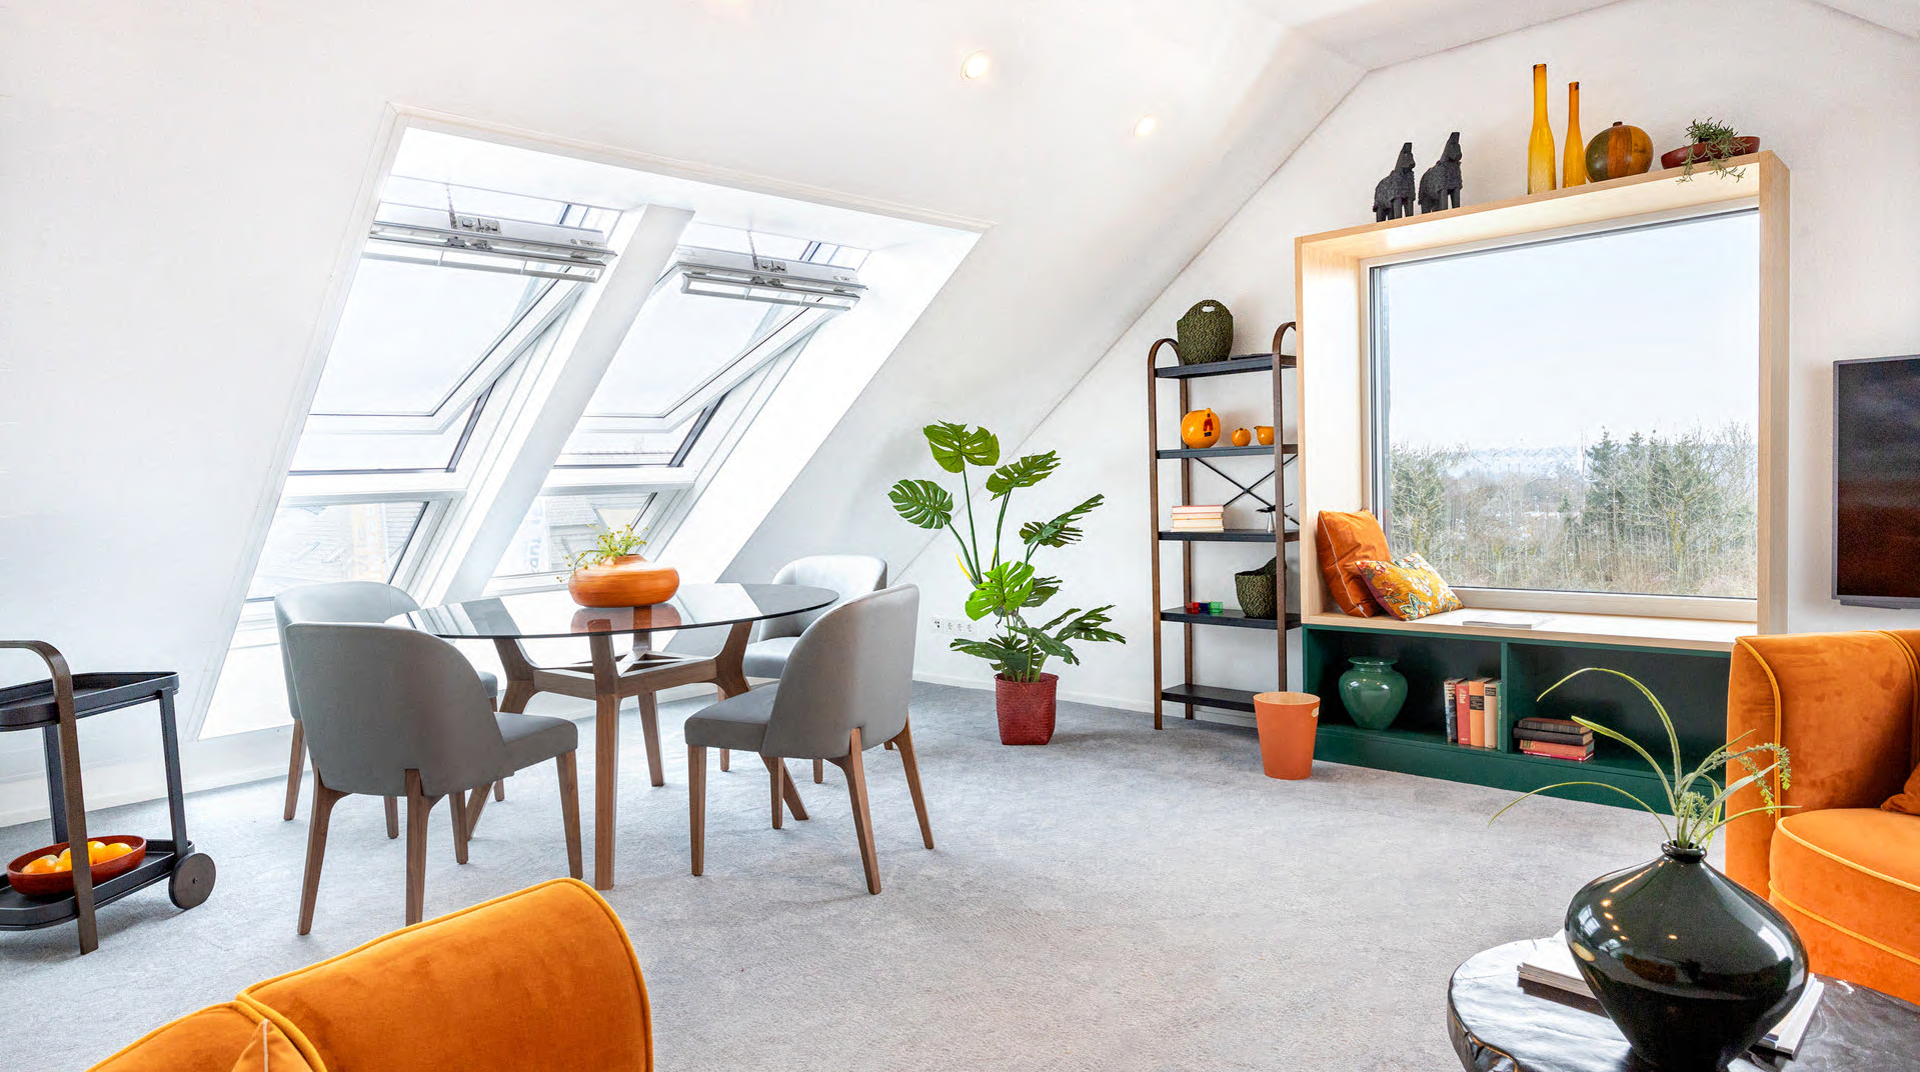 Das Dachgeschoss mit schöner Aussicht ins Wuppertal. Es ist hell gestaltet und wirkt dadurch trotz Dachschrägen groß. Man sieht einen Teppichboden, Stühle samt Tisch, Deko, Pflanzen, Sessel, normales und Dachfenster.